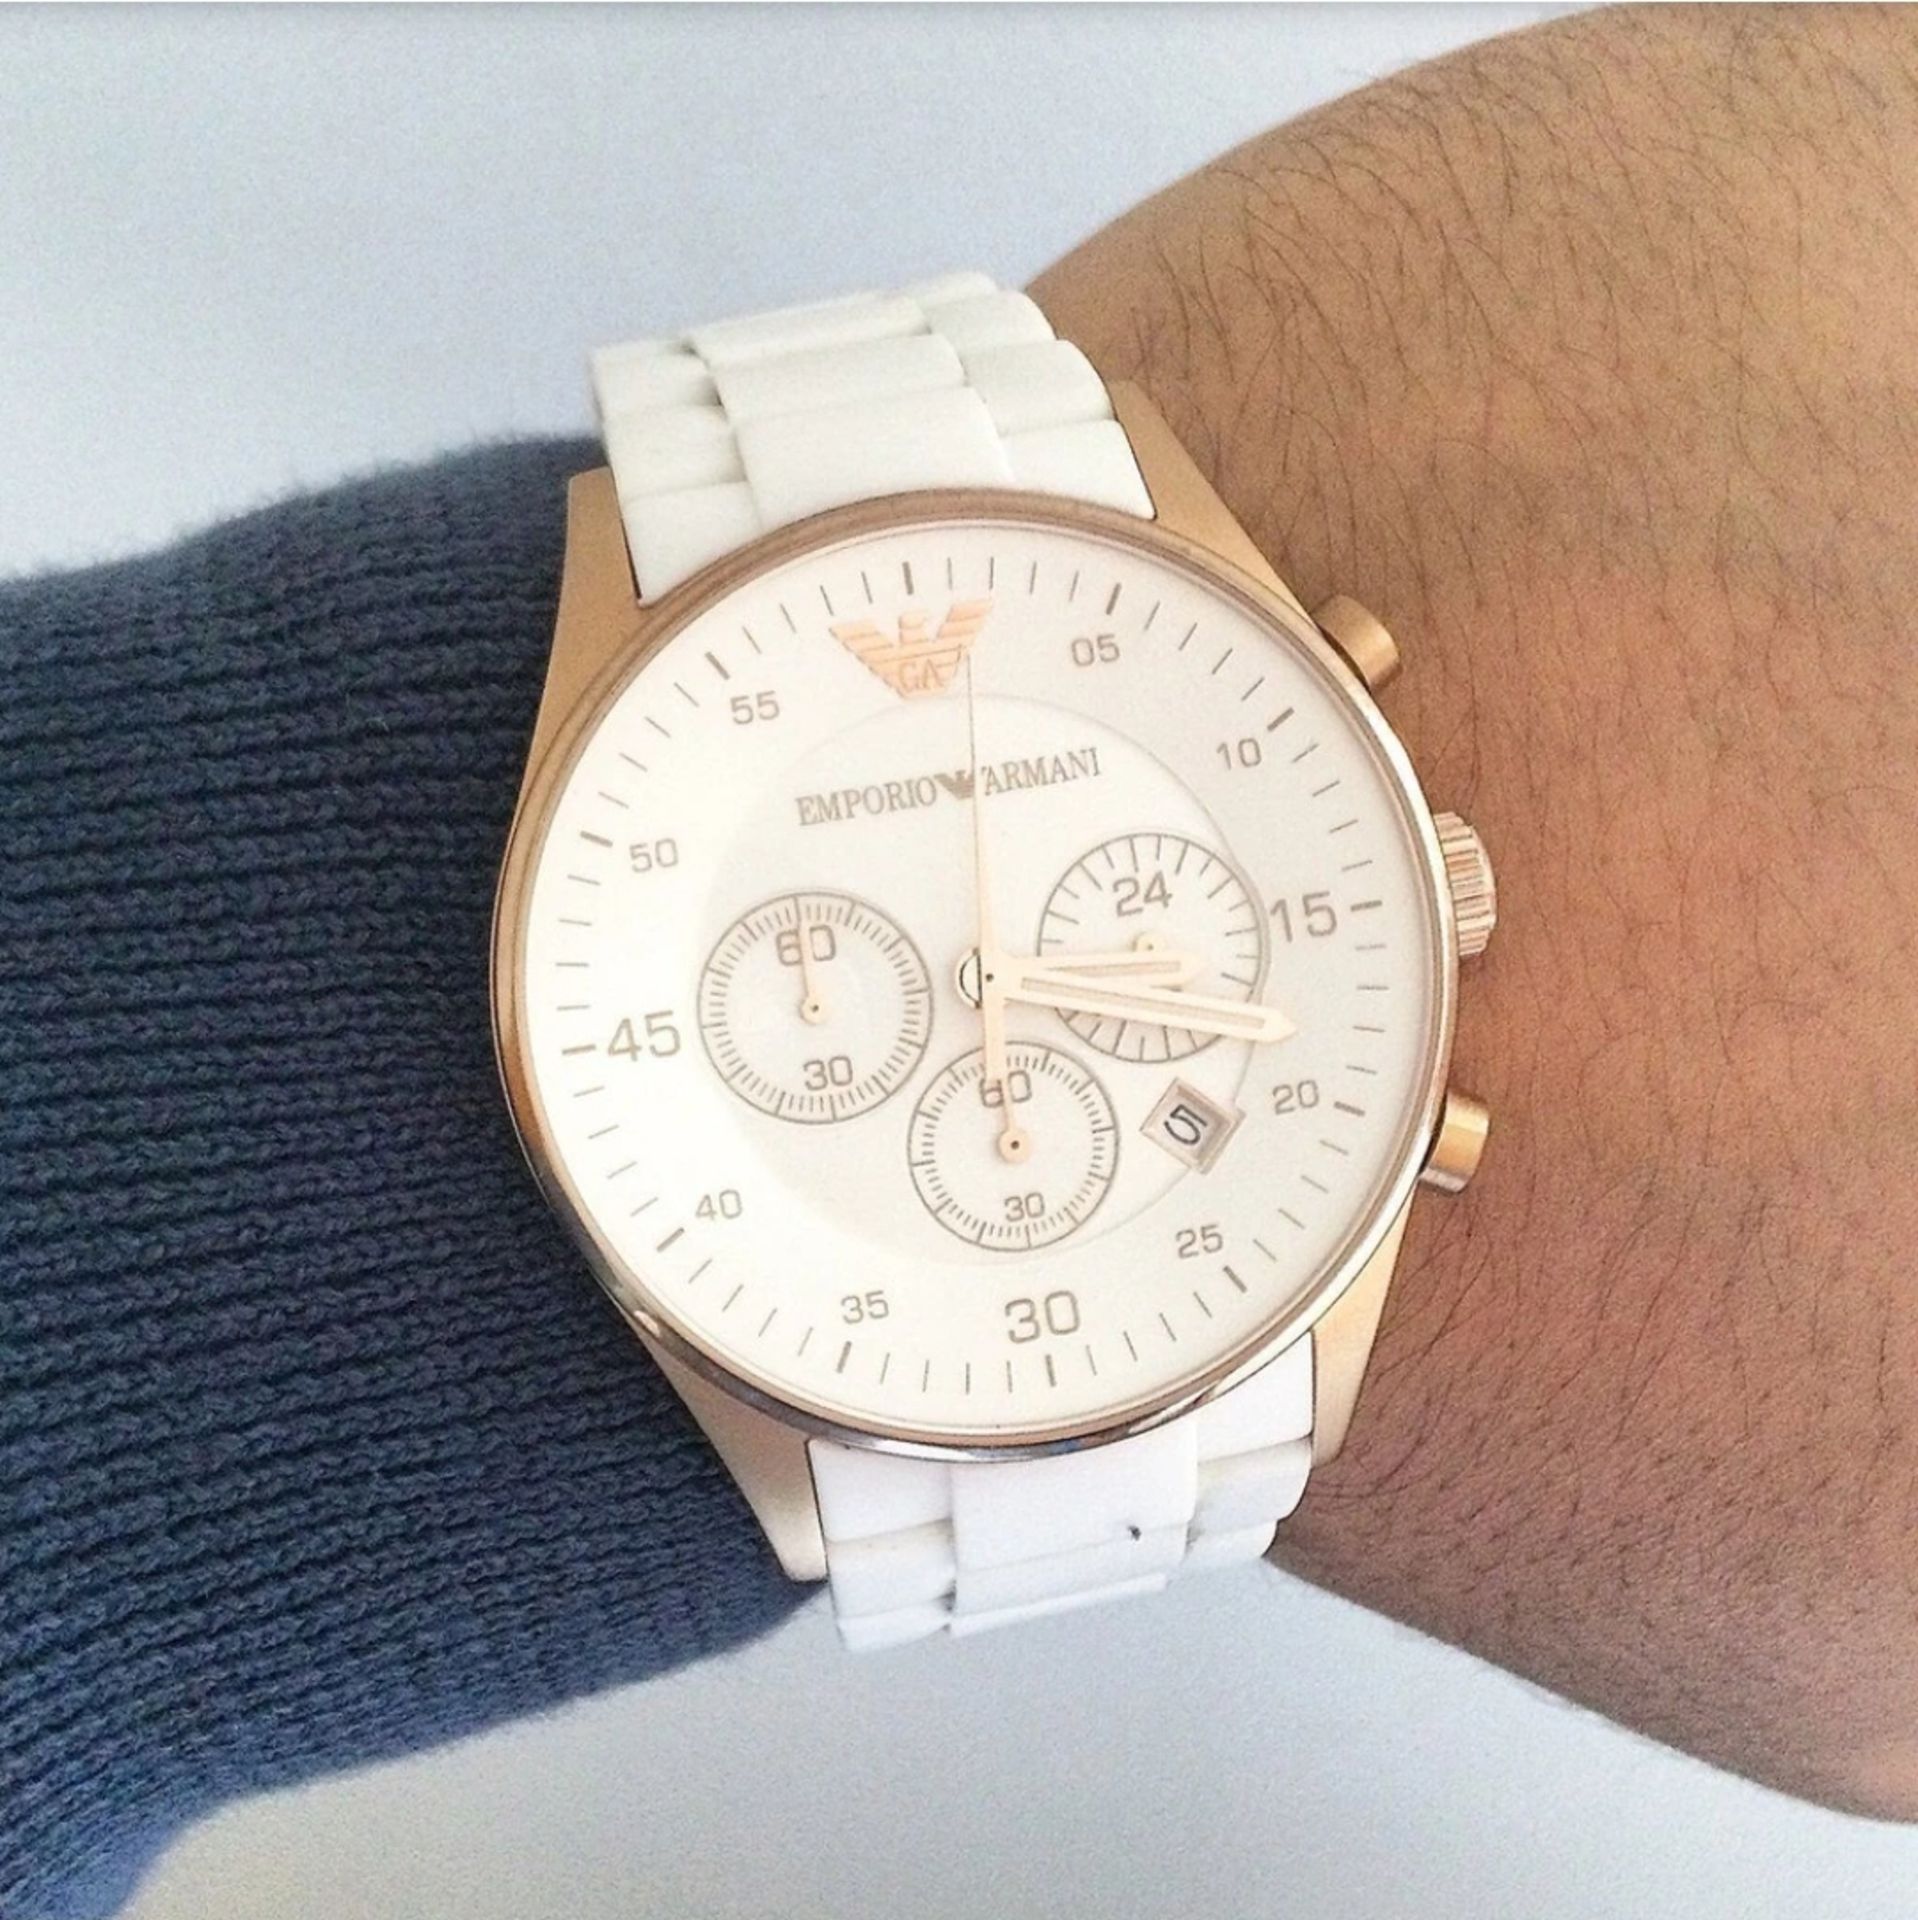 Emporio Armani AR5919 Men's Sportivo White Silicone Strap Chronograph Watch - Image 2 of 4